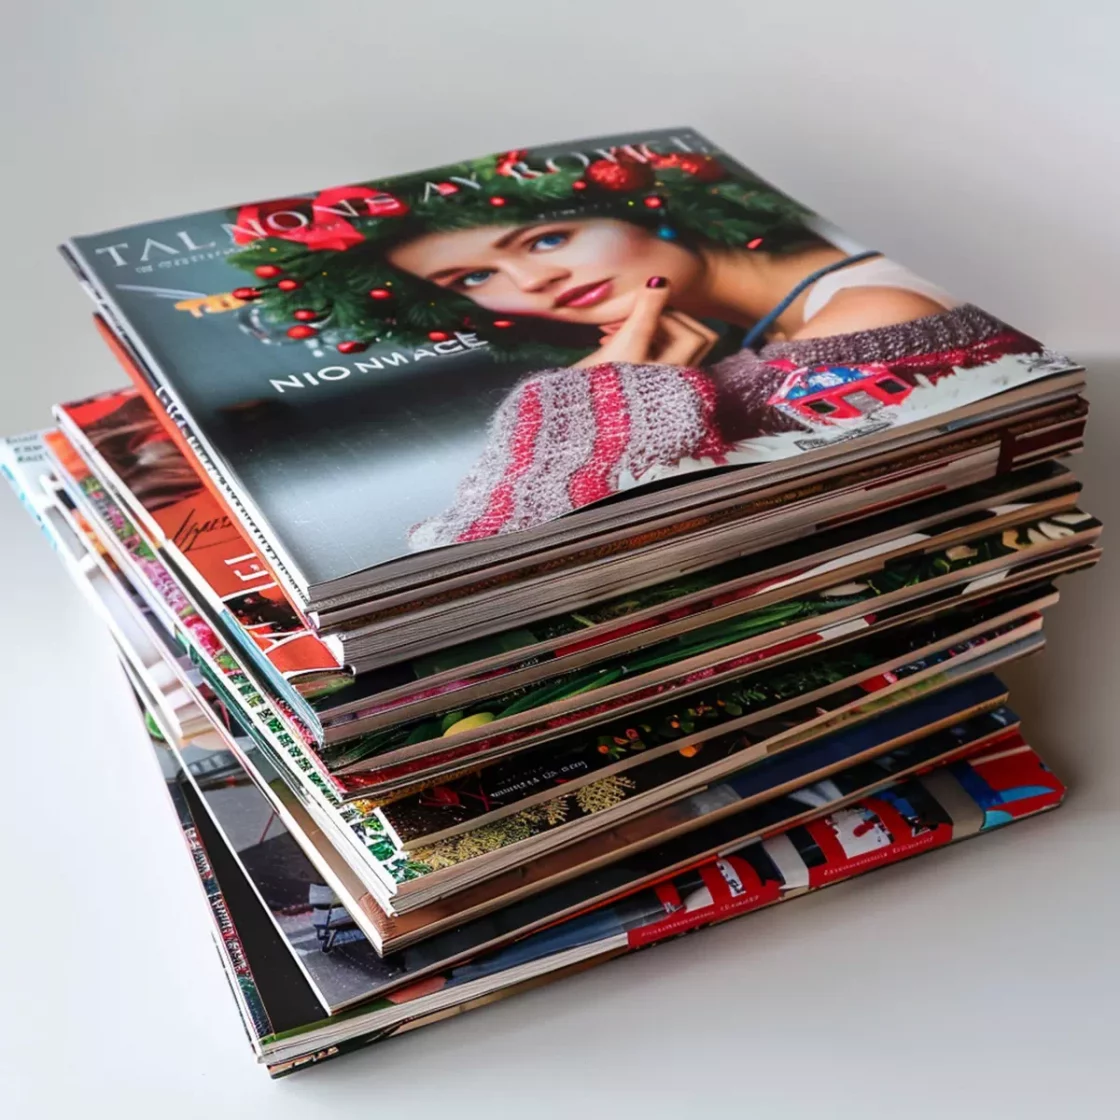 impresión de revistas, catálogos y maquetación - impresiontotal.es